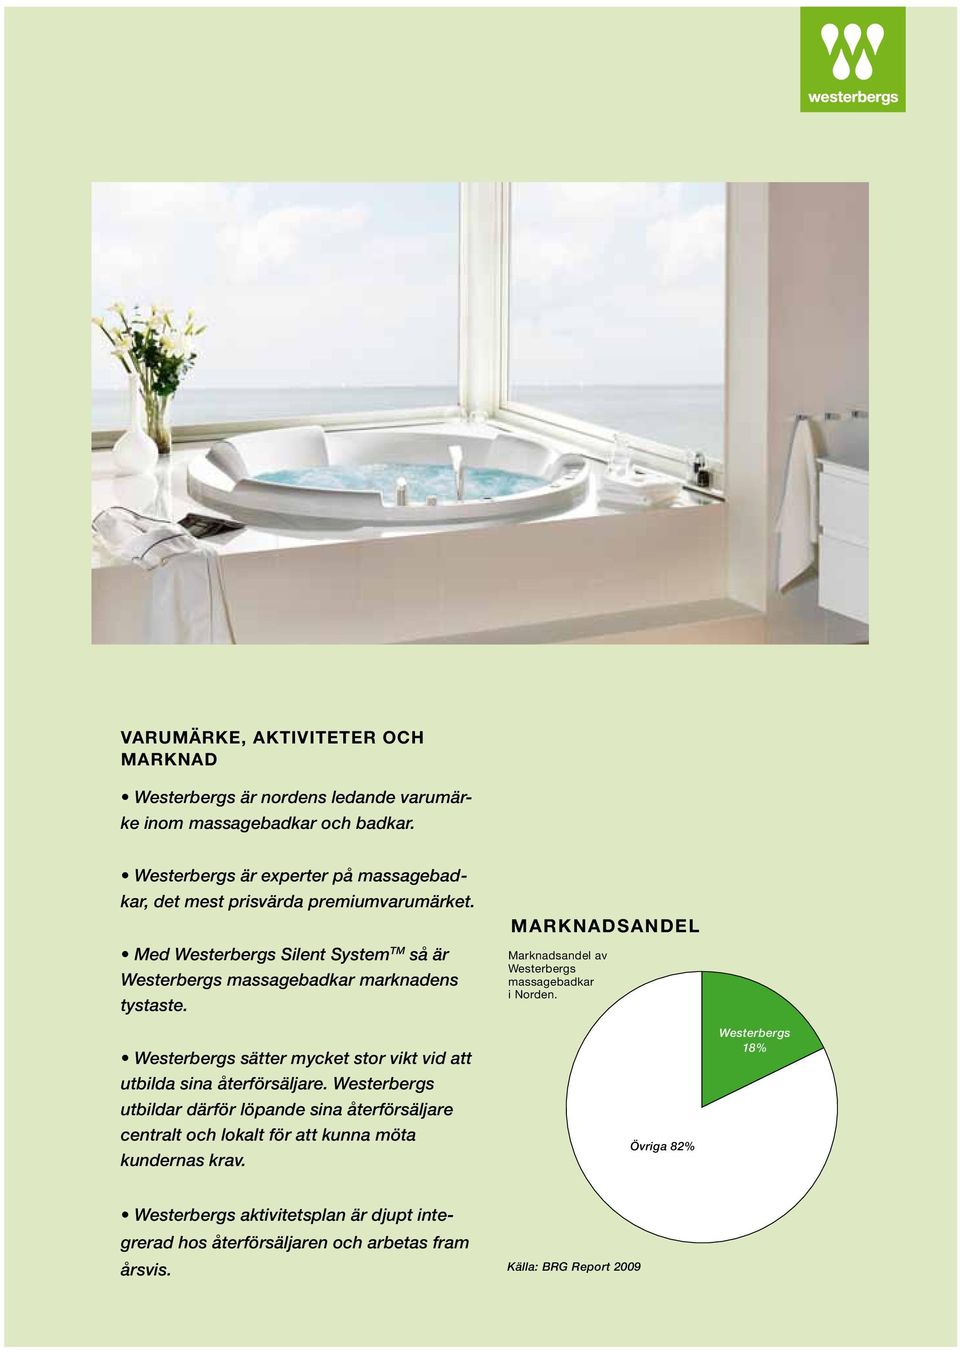 13% 6% Med Westerbergs Silent System 15% TM så är Westerbergs massagebadkar 41% marknadens tystaste.